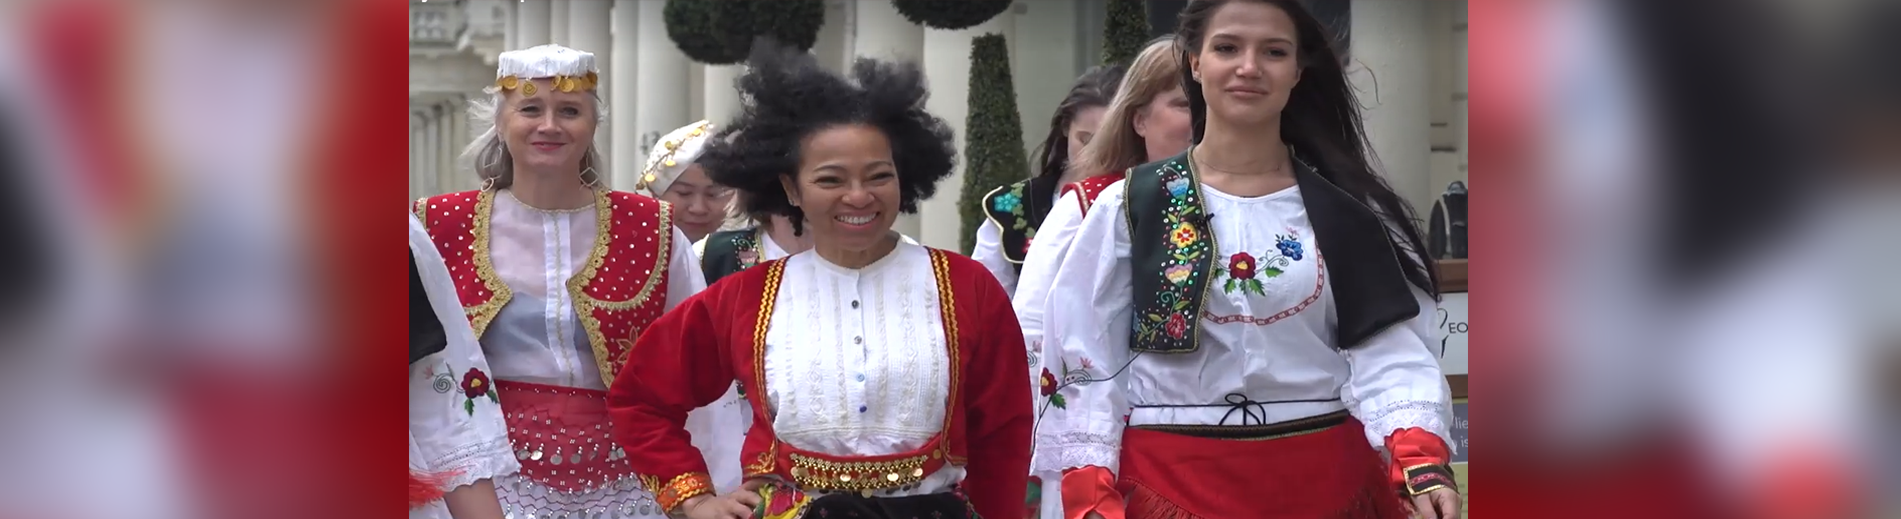 Femra nga e gjithë bota me veshje tradicionale shqiptare urojnë 8 Marsin